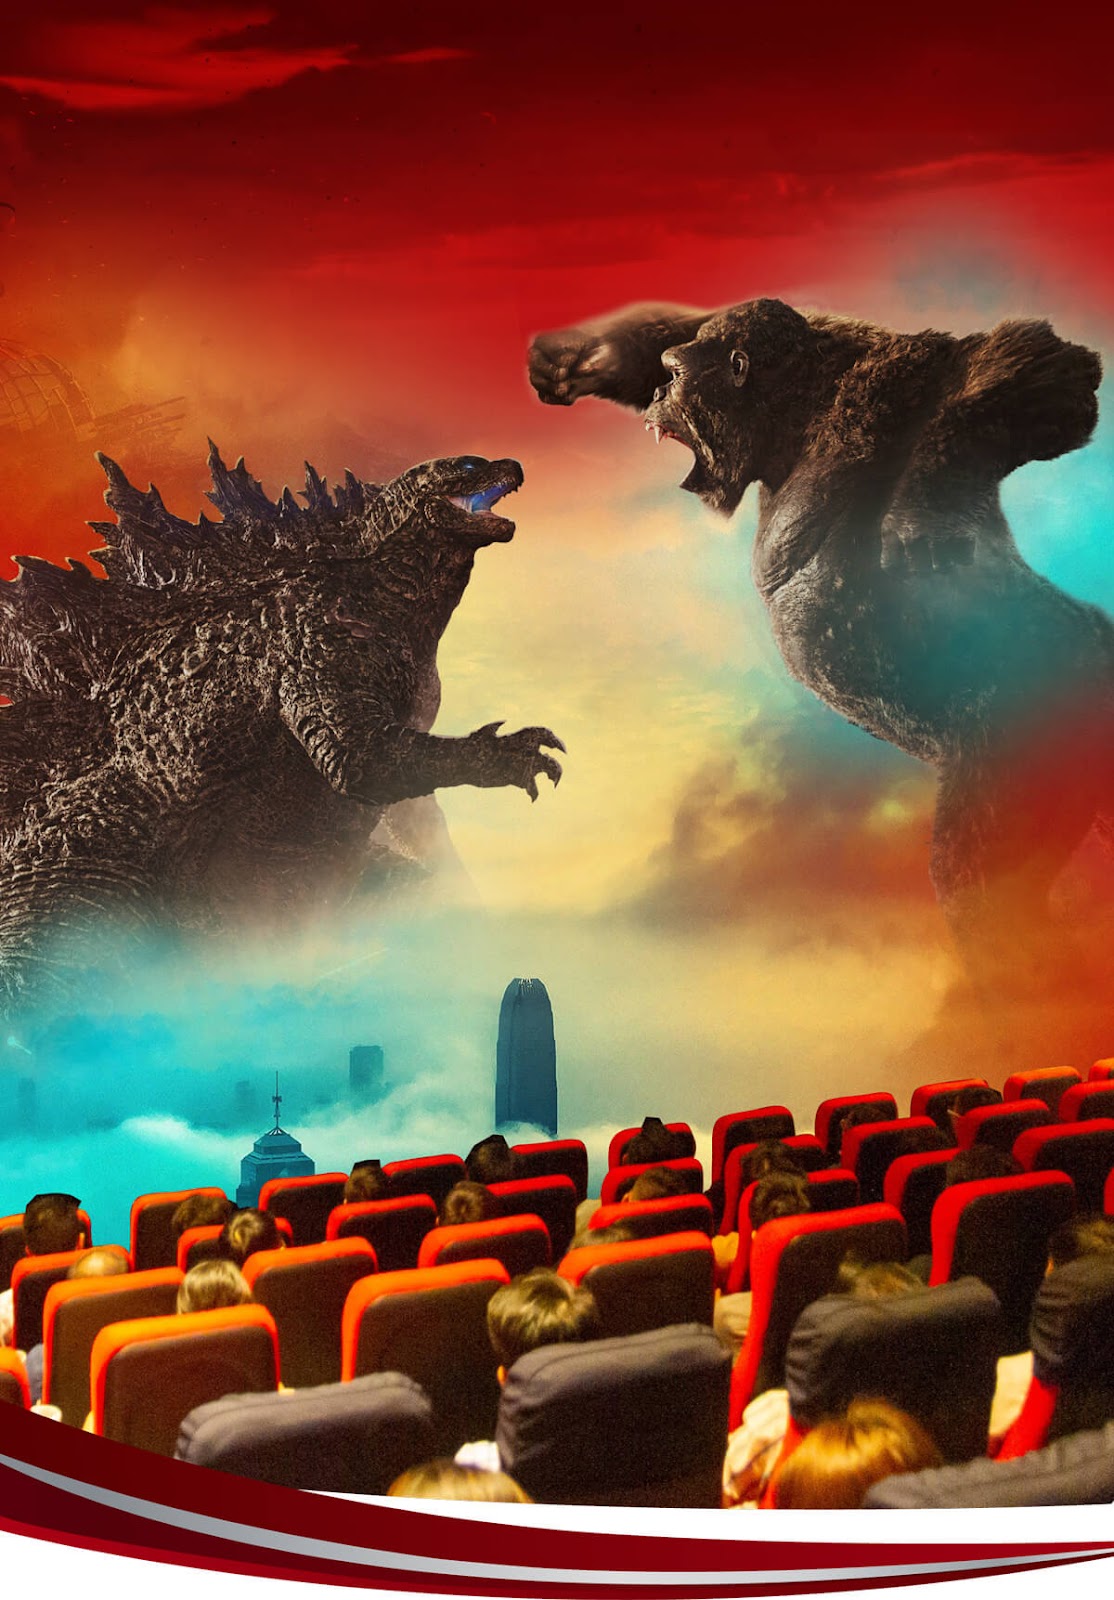 Elipsport tổ chức buổi xem phim bom tấn Gozilla vs Kong